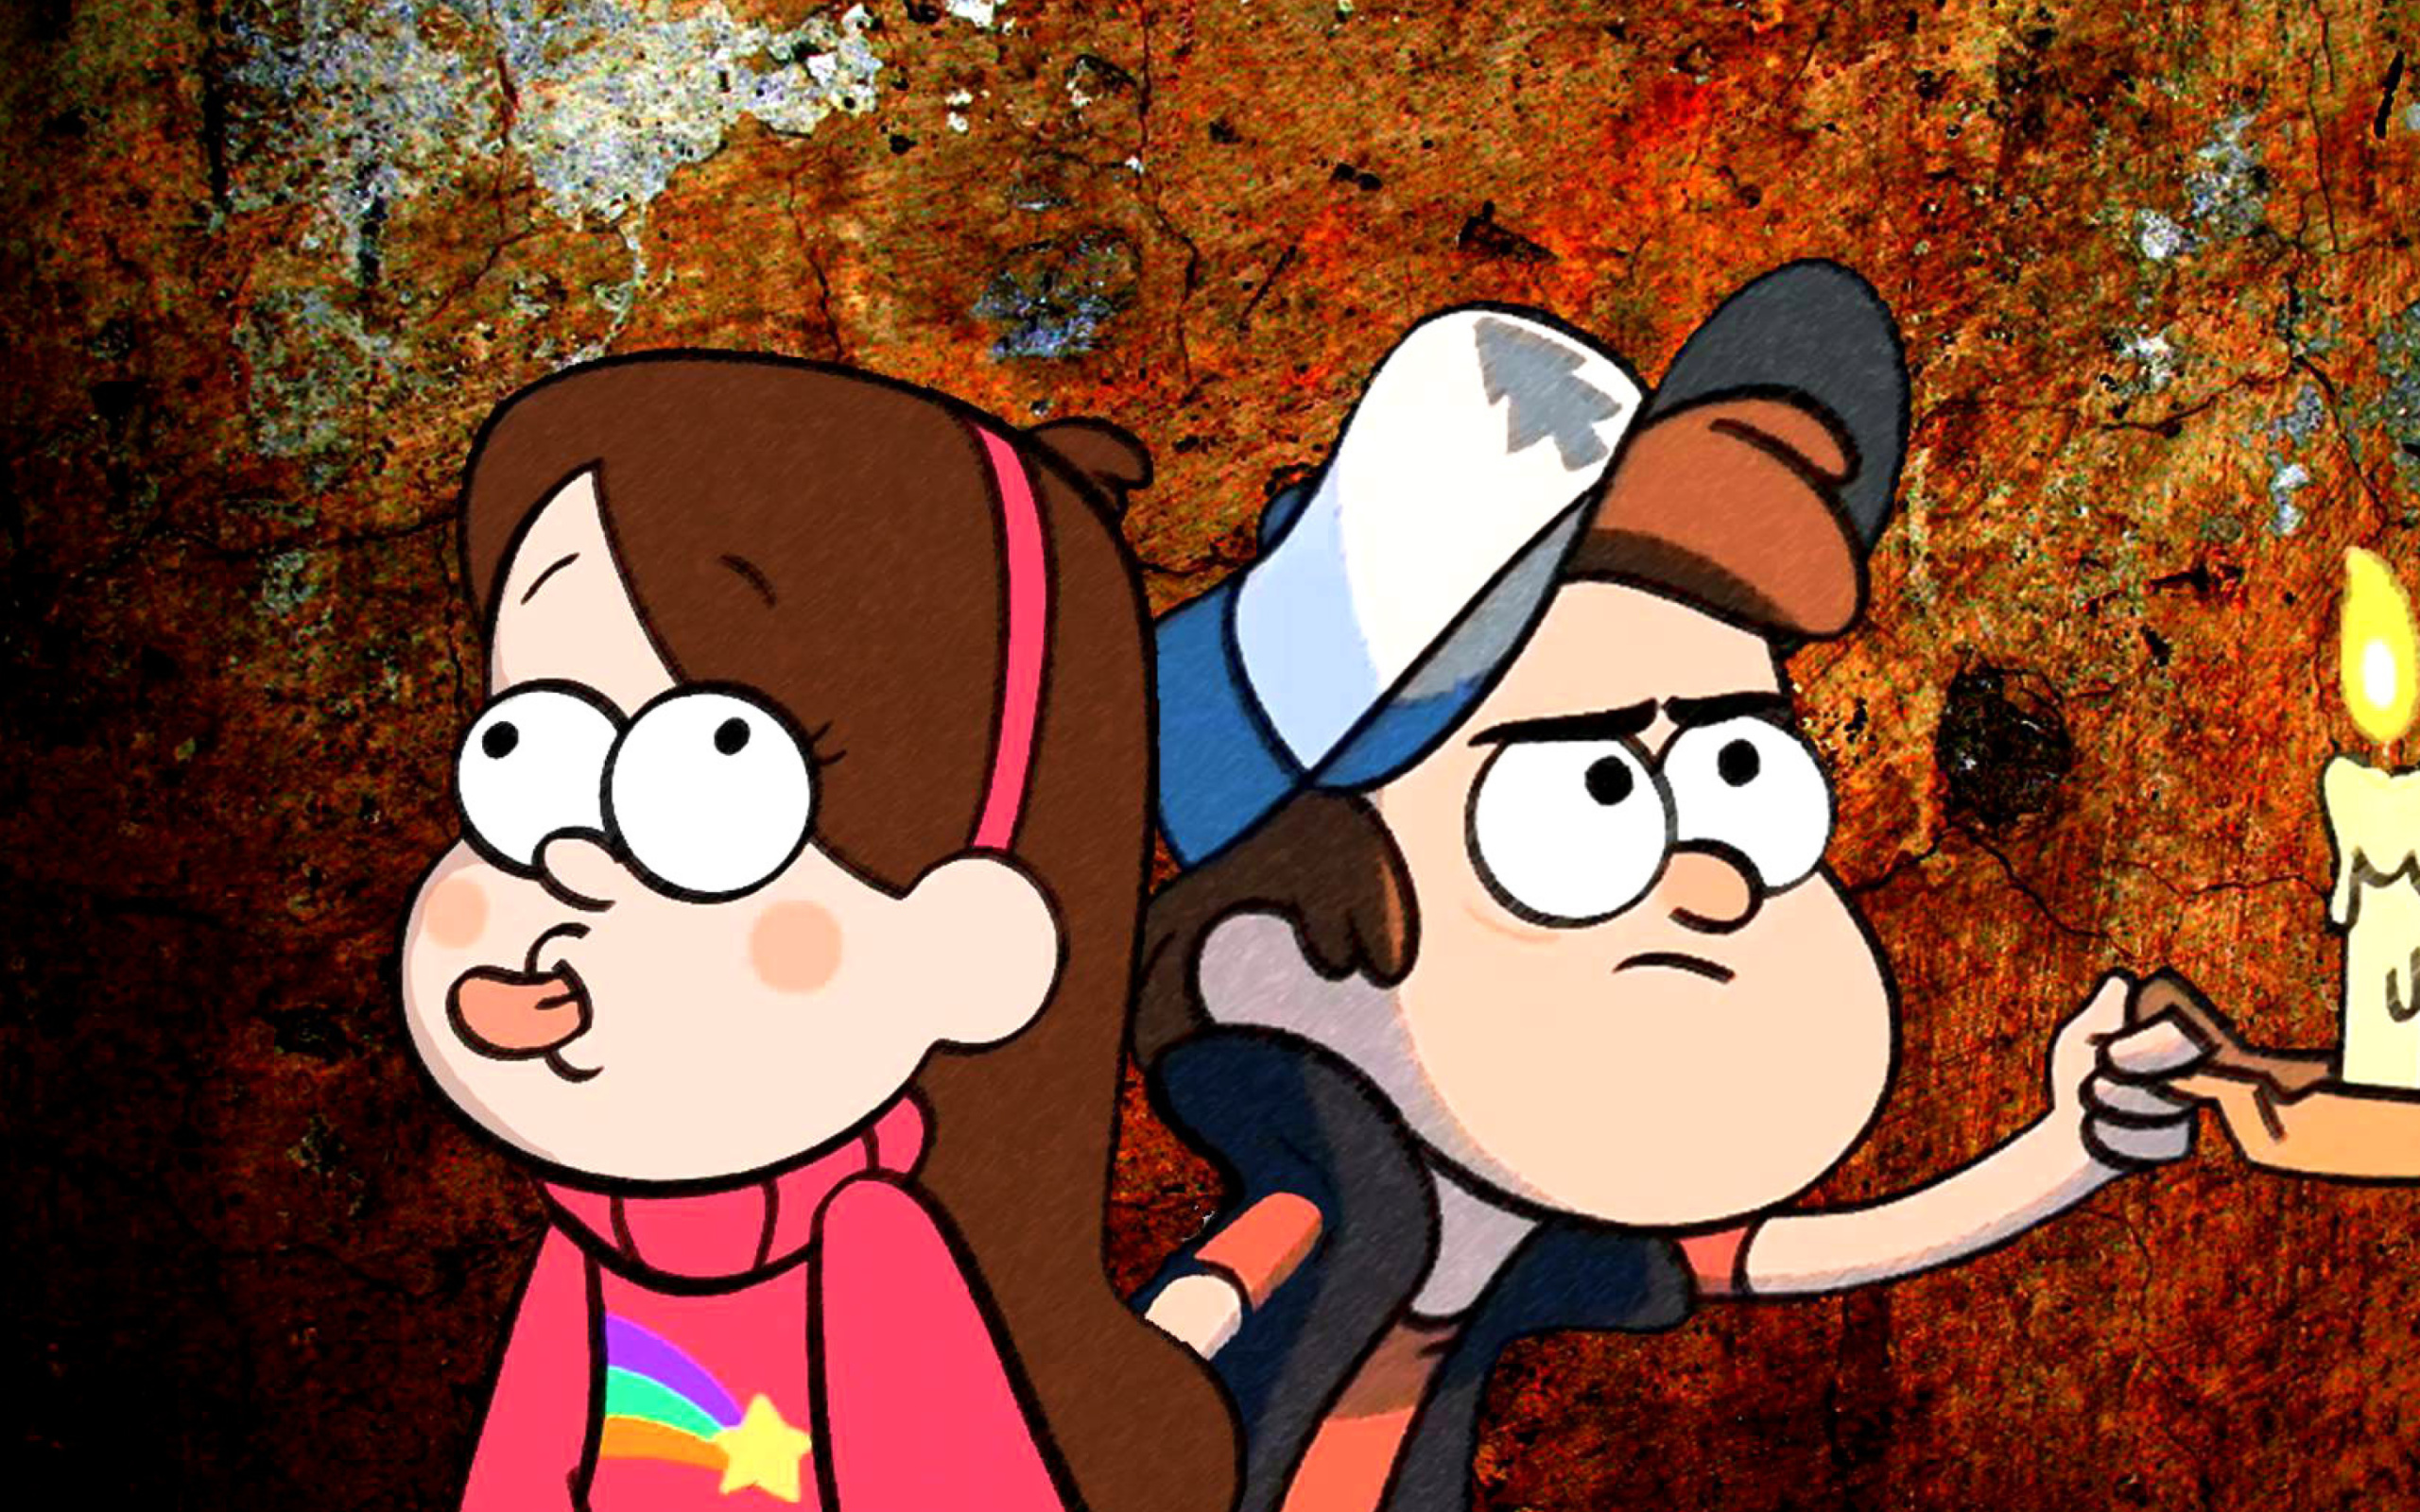 Mabel and Dipper in Gravity Falls wallpaper 2560x1600